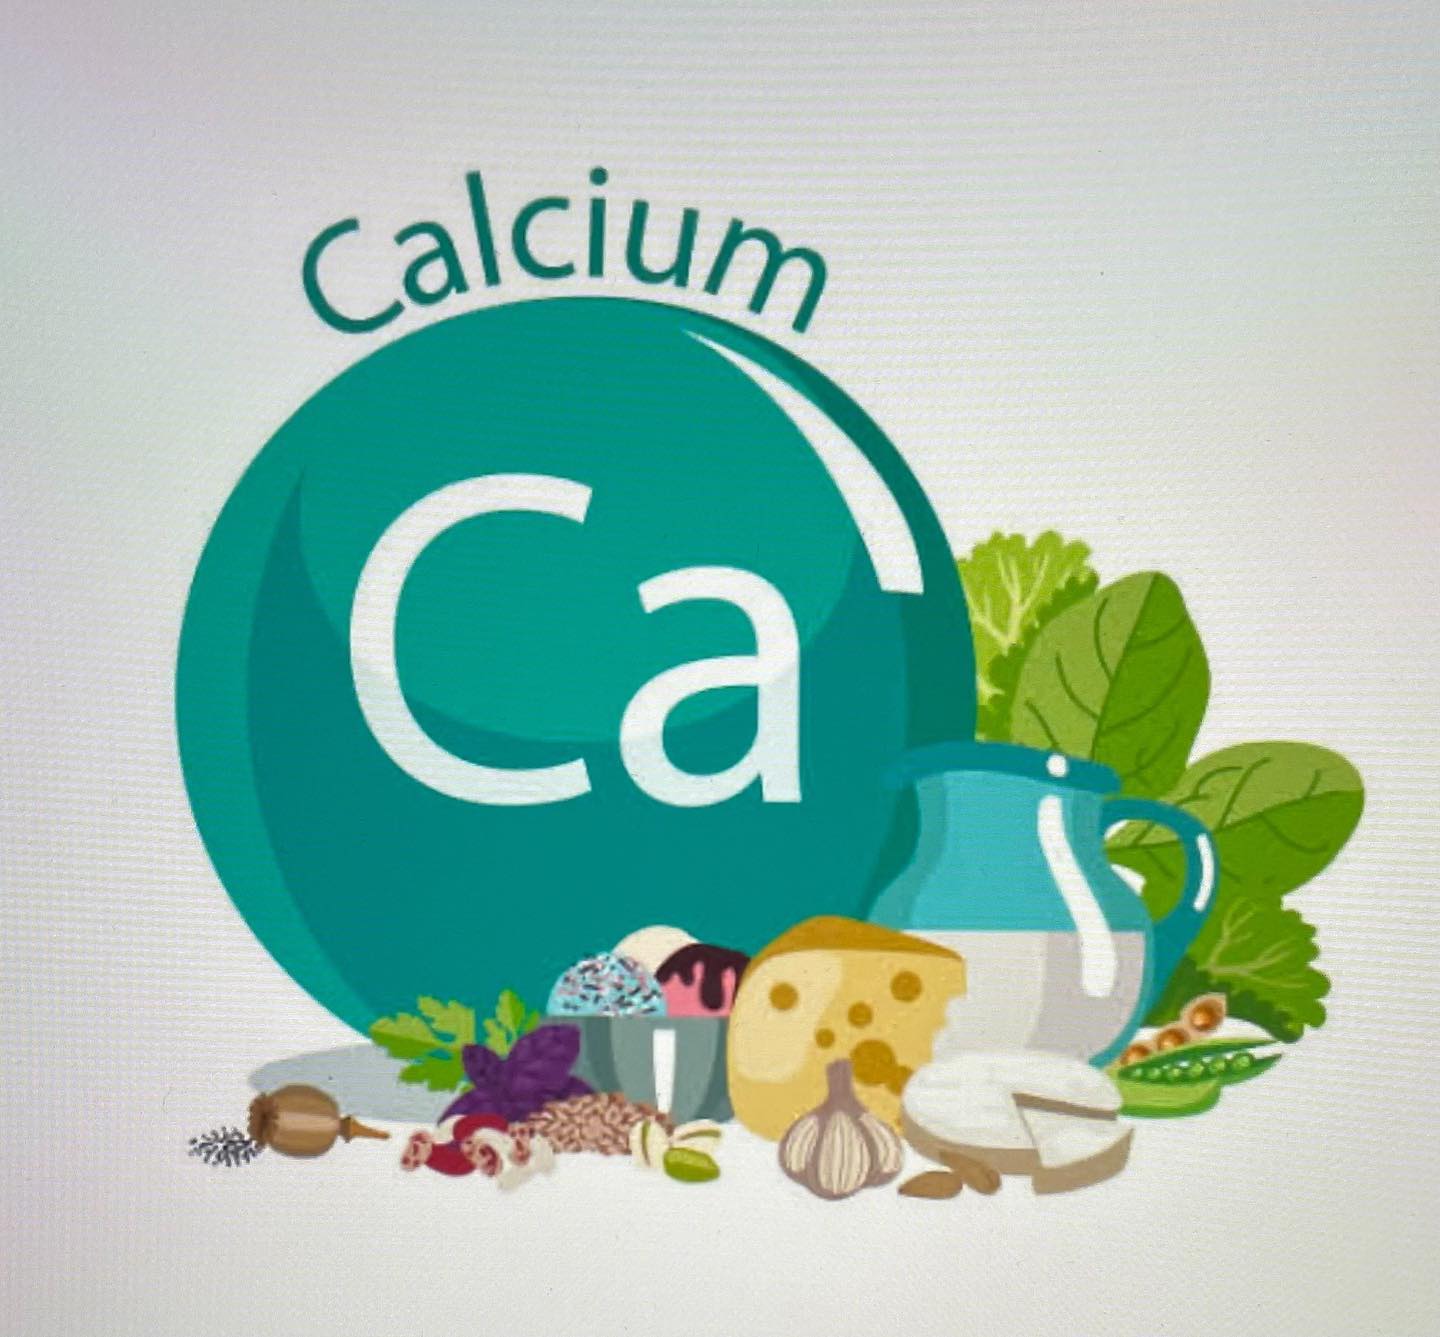 #善玉、悪玉カルシウム！乳製品やサプリメントでカルシウムをとると骨の中のカルシウムが溶け出す。体内のカルシウム濃度が上がると筋肉や、血管壁に沈着する。肩の筋肉に沈着すると肩凝りに血管では動脈硬化になる。善玉カルシウムは、血管や細胞に沈着せず骨を元気にする。野菜、小魚、海藻、ボレイ（漢方薬）に含まれる。#善玉#悪玉#カルシウム#神奈川県#横浜市#旭区#二俣川#相鉄線沿いカイロ#カイロプラクティック#ムゲン#ボディリフレッシュムゲン#骨盤矯正#頸椎矯正#胸椎矯正#中国氣功